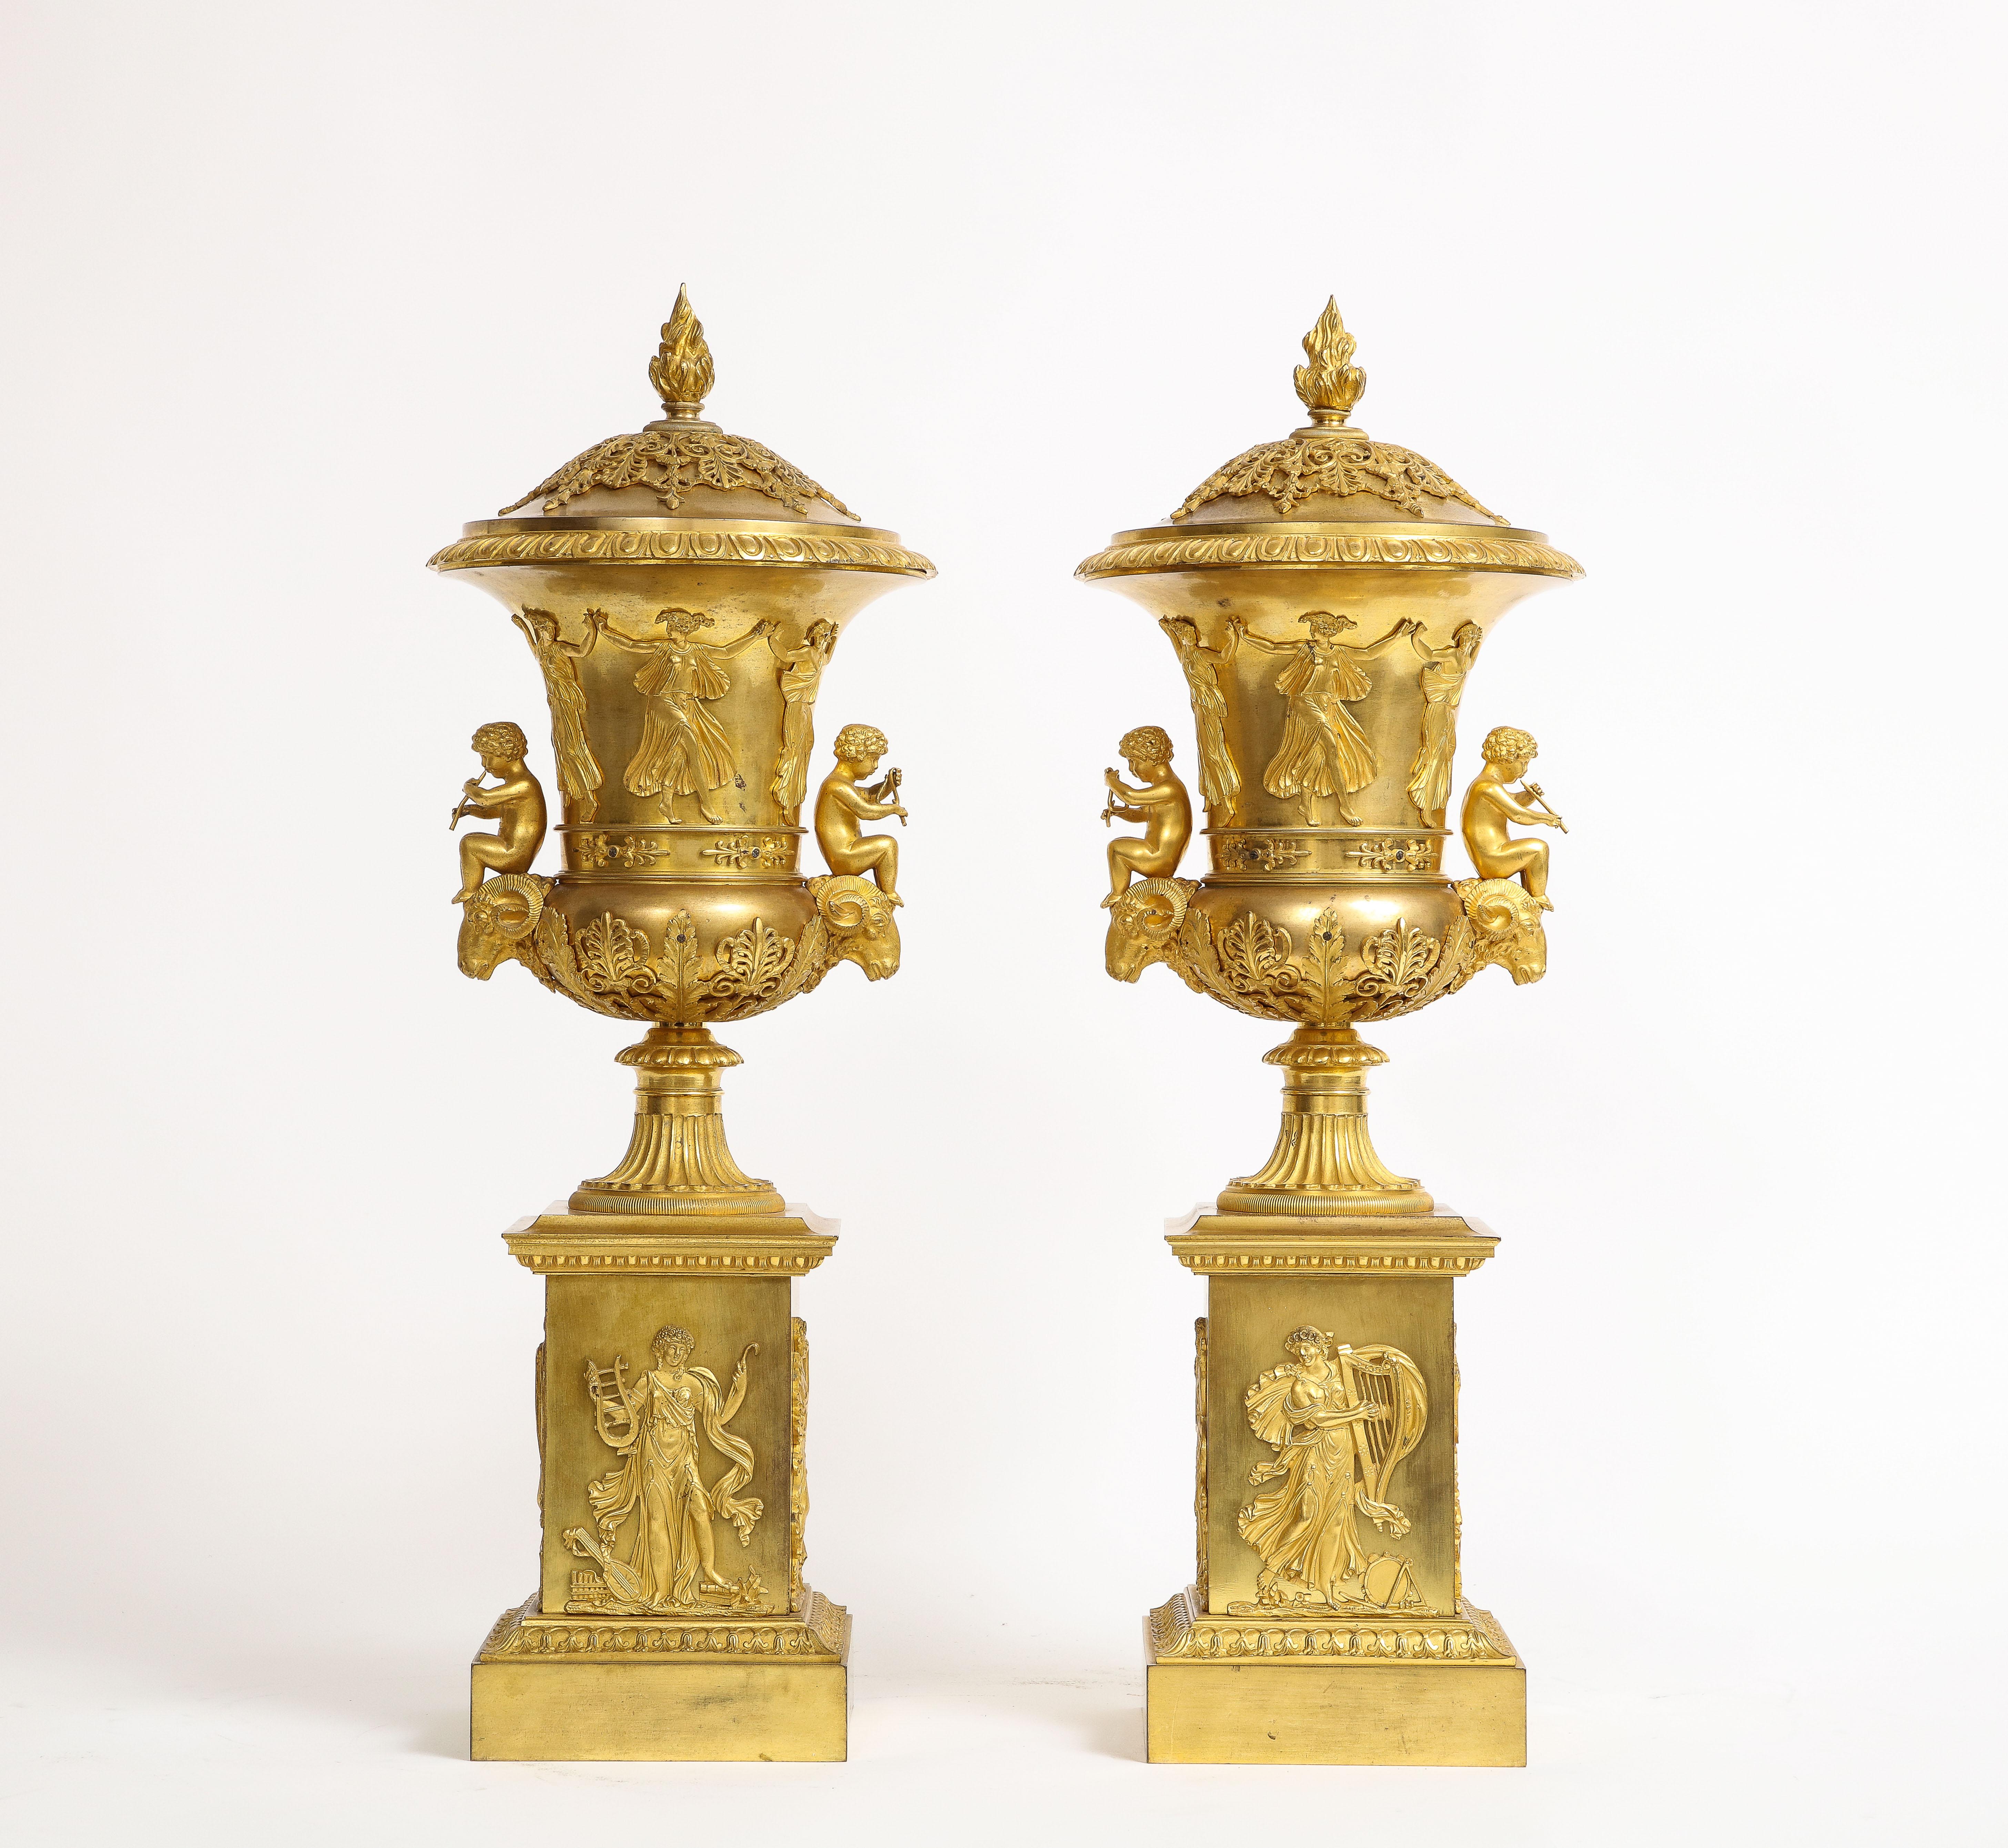 Eine unglaubliche und seltene Paar 19. Jahrhundert Französisch Ormolu bedeckt Potpourris, zugeschrieben Thomier A Paris. Dieses Paar stammt aus dem Jahr 1810, also aus der glanzvollen Zeit des französischen Kaiserreichs. Diese bemerkenswerten Urnen